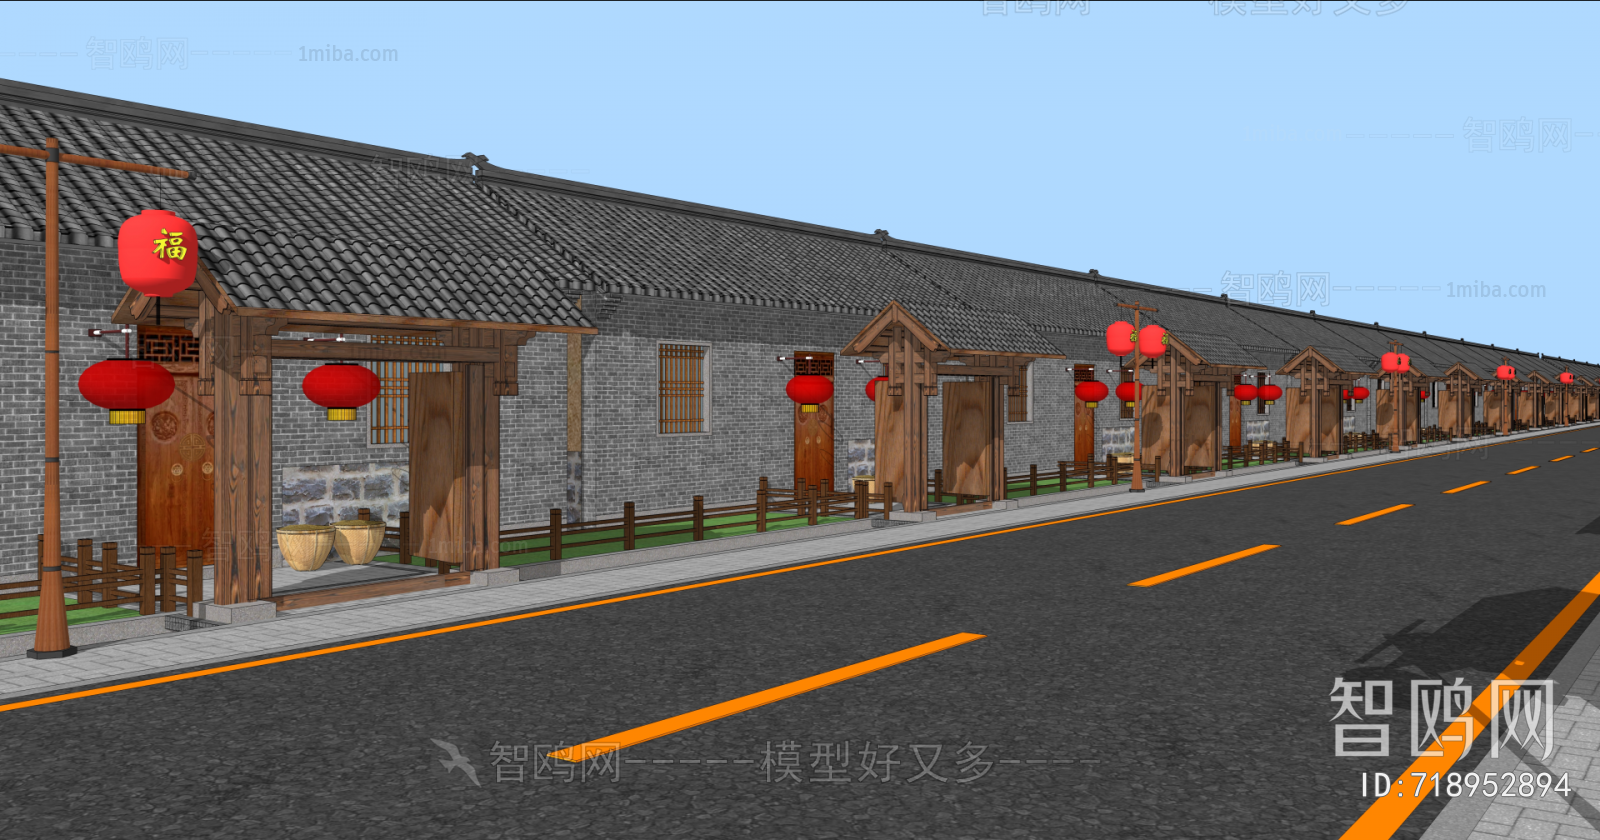 中式乡村建筑街道